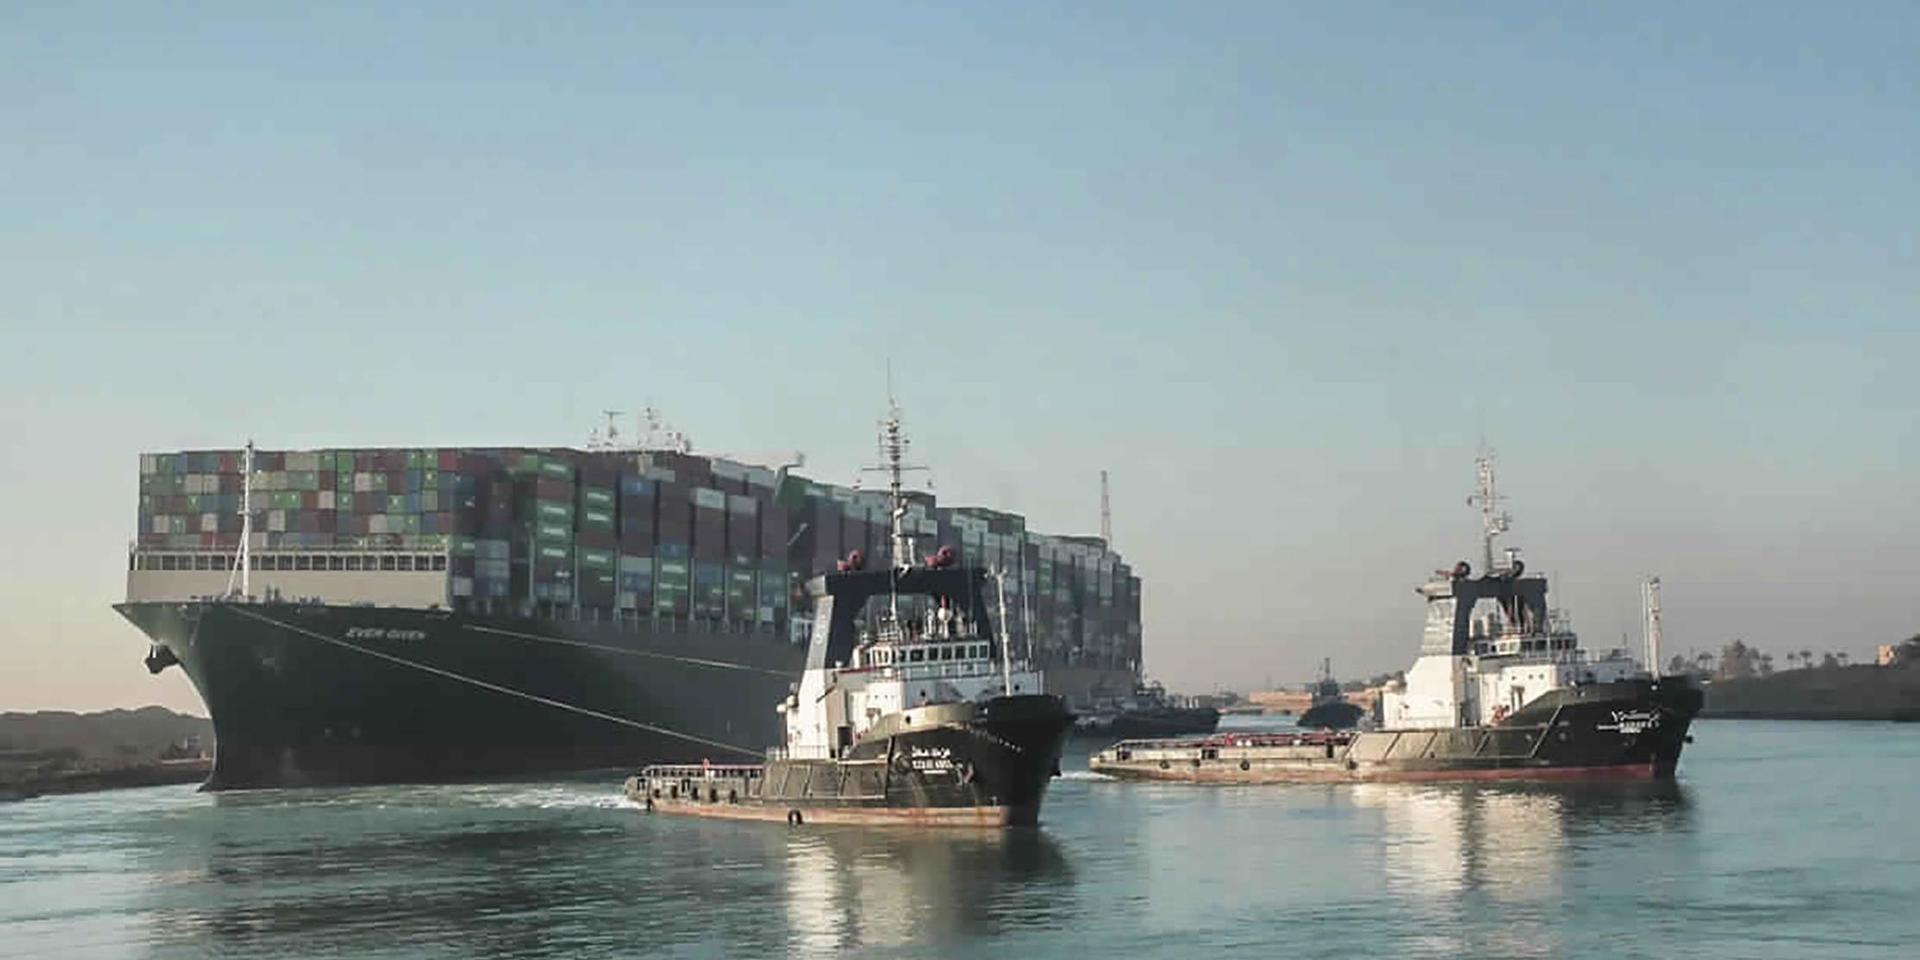 Båten Ever Given som fastnade i Suez-kanalen kräver nu ägarna av det som fraktas på den på pengar för reparationerna. Egyptiska myndigheter tillåter inte fartyget att åka vidare innan det betalat miljardbelopp för skadorna i kanalen. Detta drabbar bland annat Hishultsföretaget Brafab som har fem containrar med utemöbler på båten.